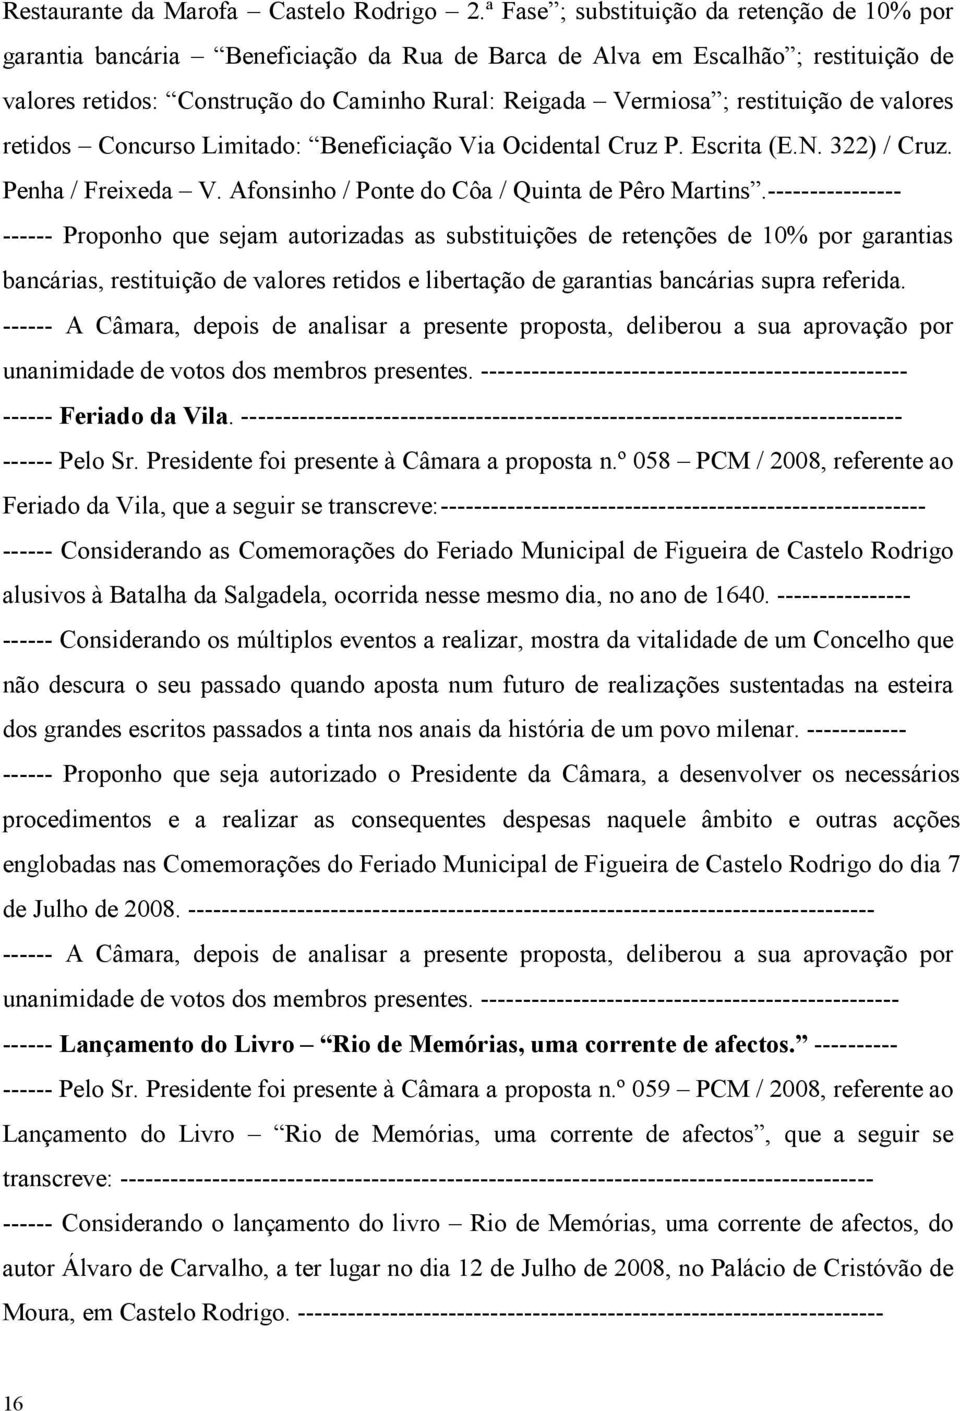 restituição de valores retidos Concurso Limitado: Beneficiação Via Ocidental Cruz P. Escrita (E.N. 322) / Cruz. Penha / Freixeda V. Afonsinho / Ponte do Côa / Quinta de Pêro Martins.